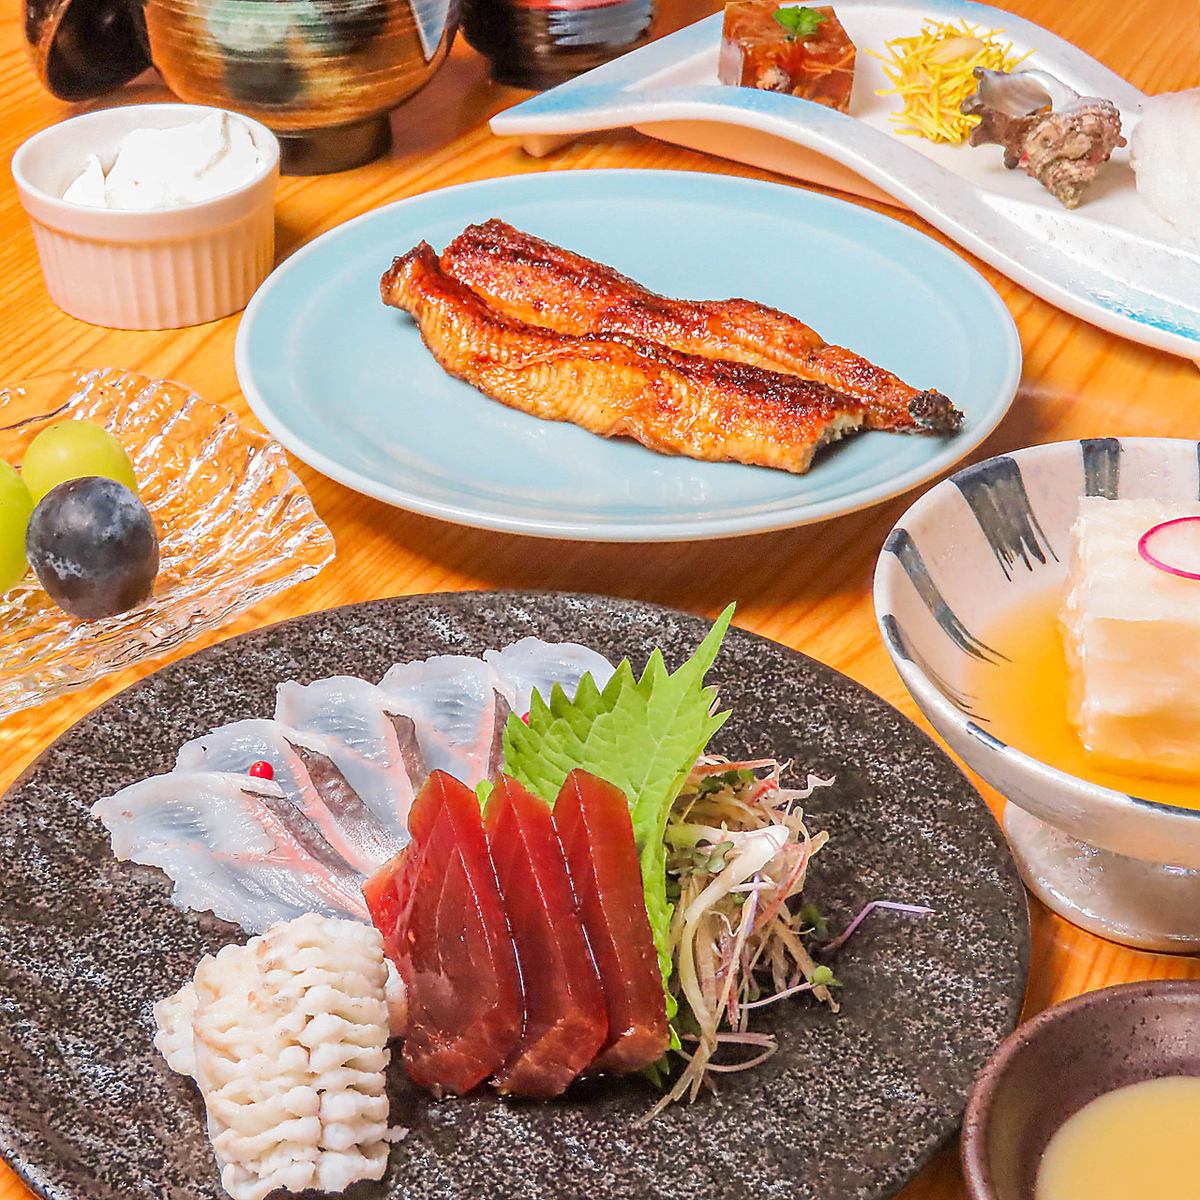 請品嚐關西風味的鰻魚汁和生魚片等稀有的鰻魚料理。